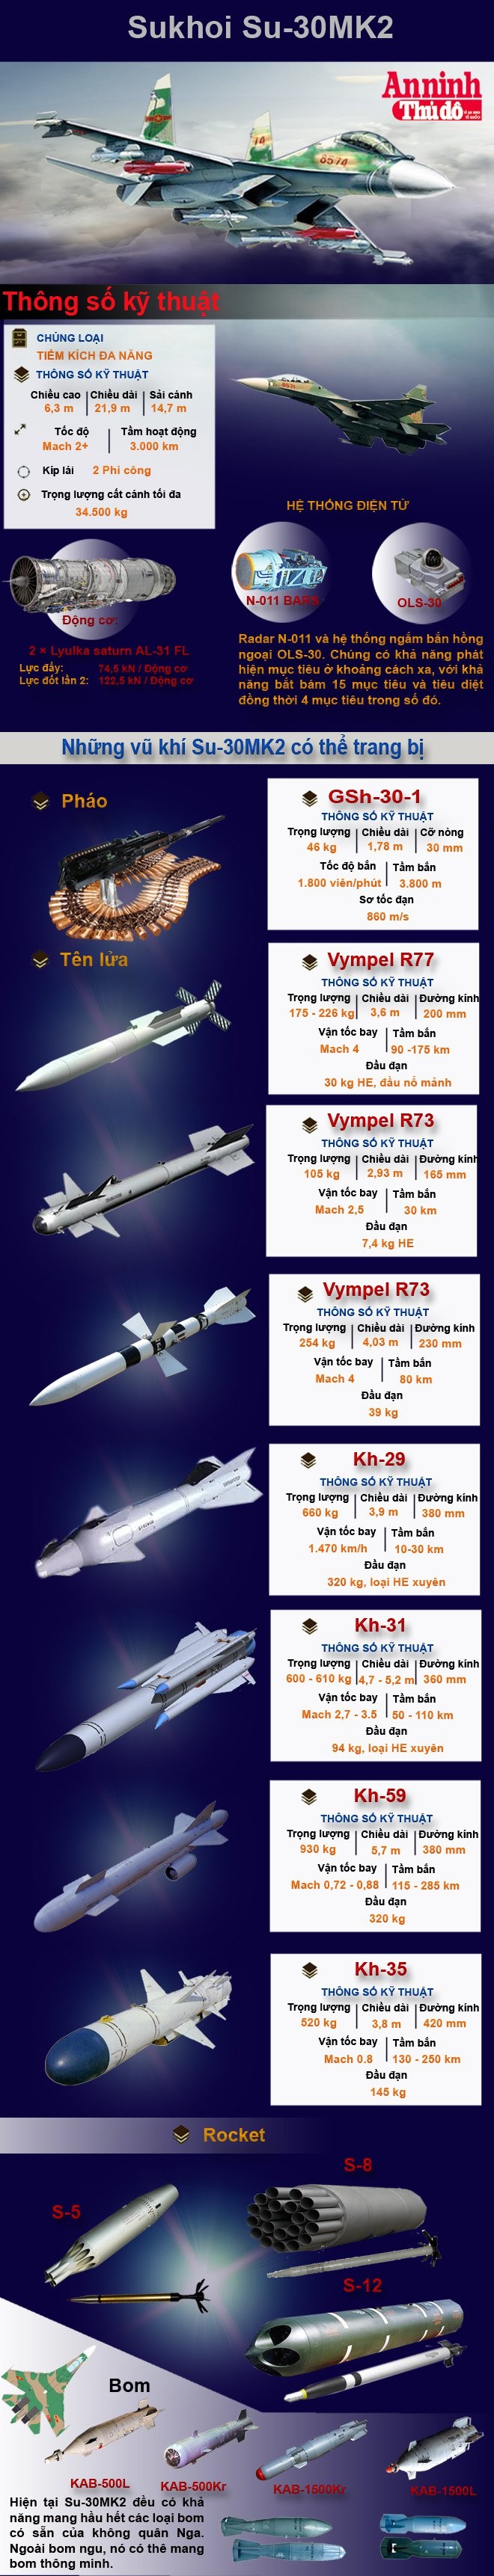 [Infographic] Kho vũ khí khủng khiếp của Sukhoi Su-30MK2 ảnh 2